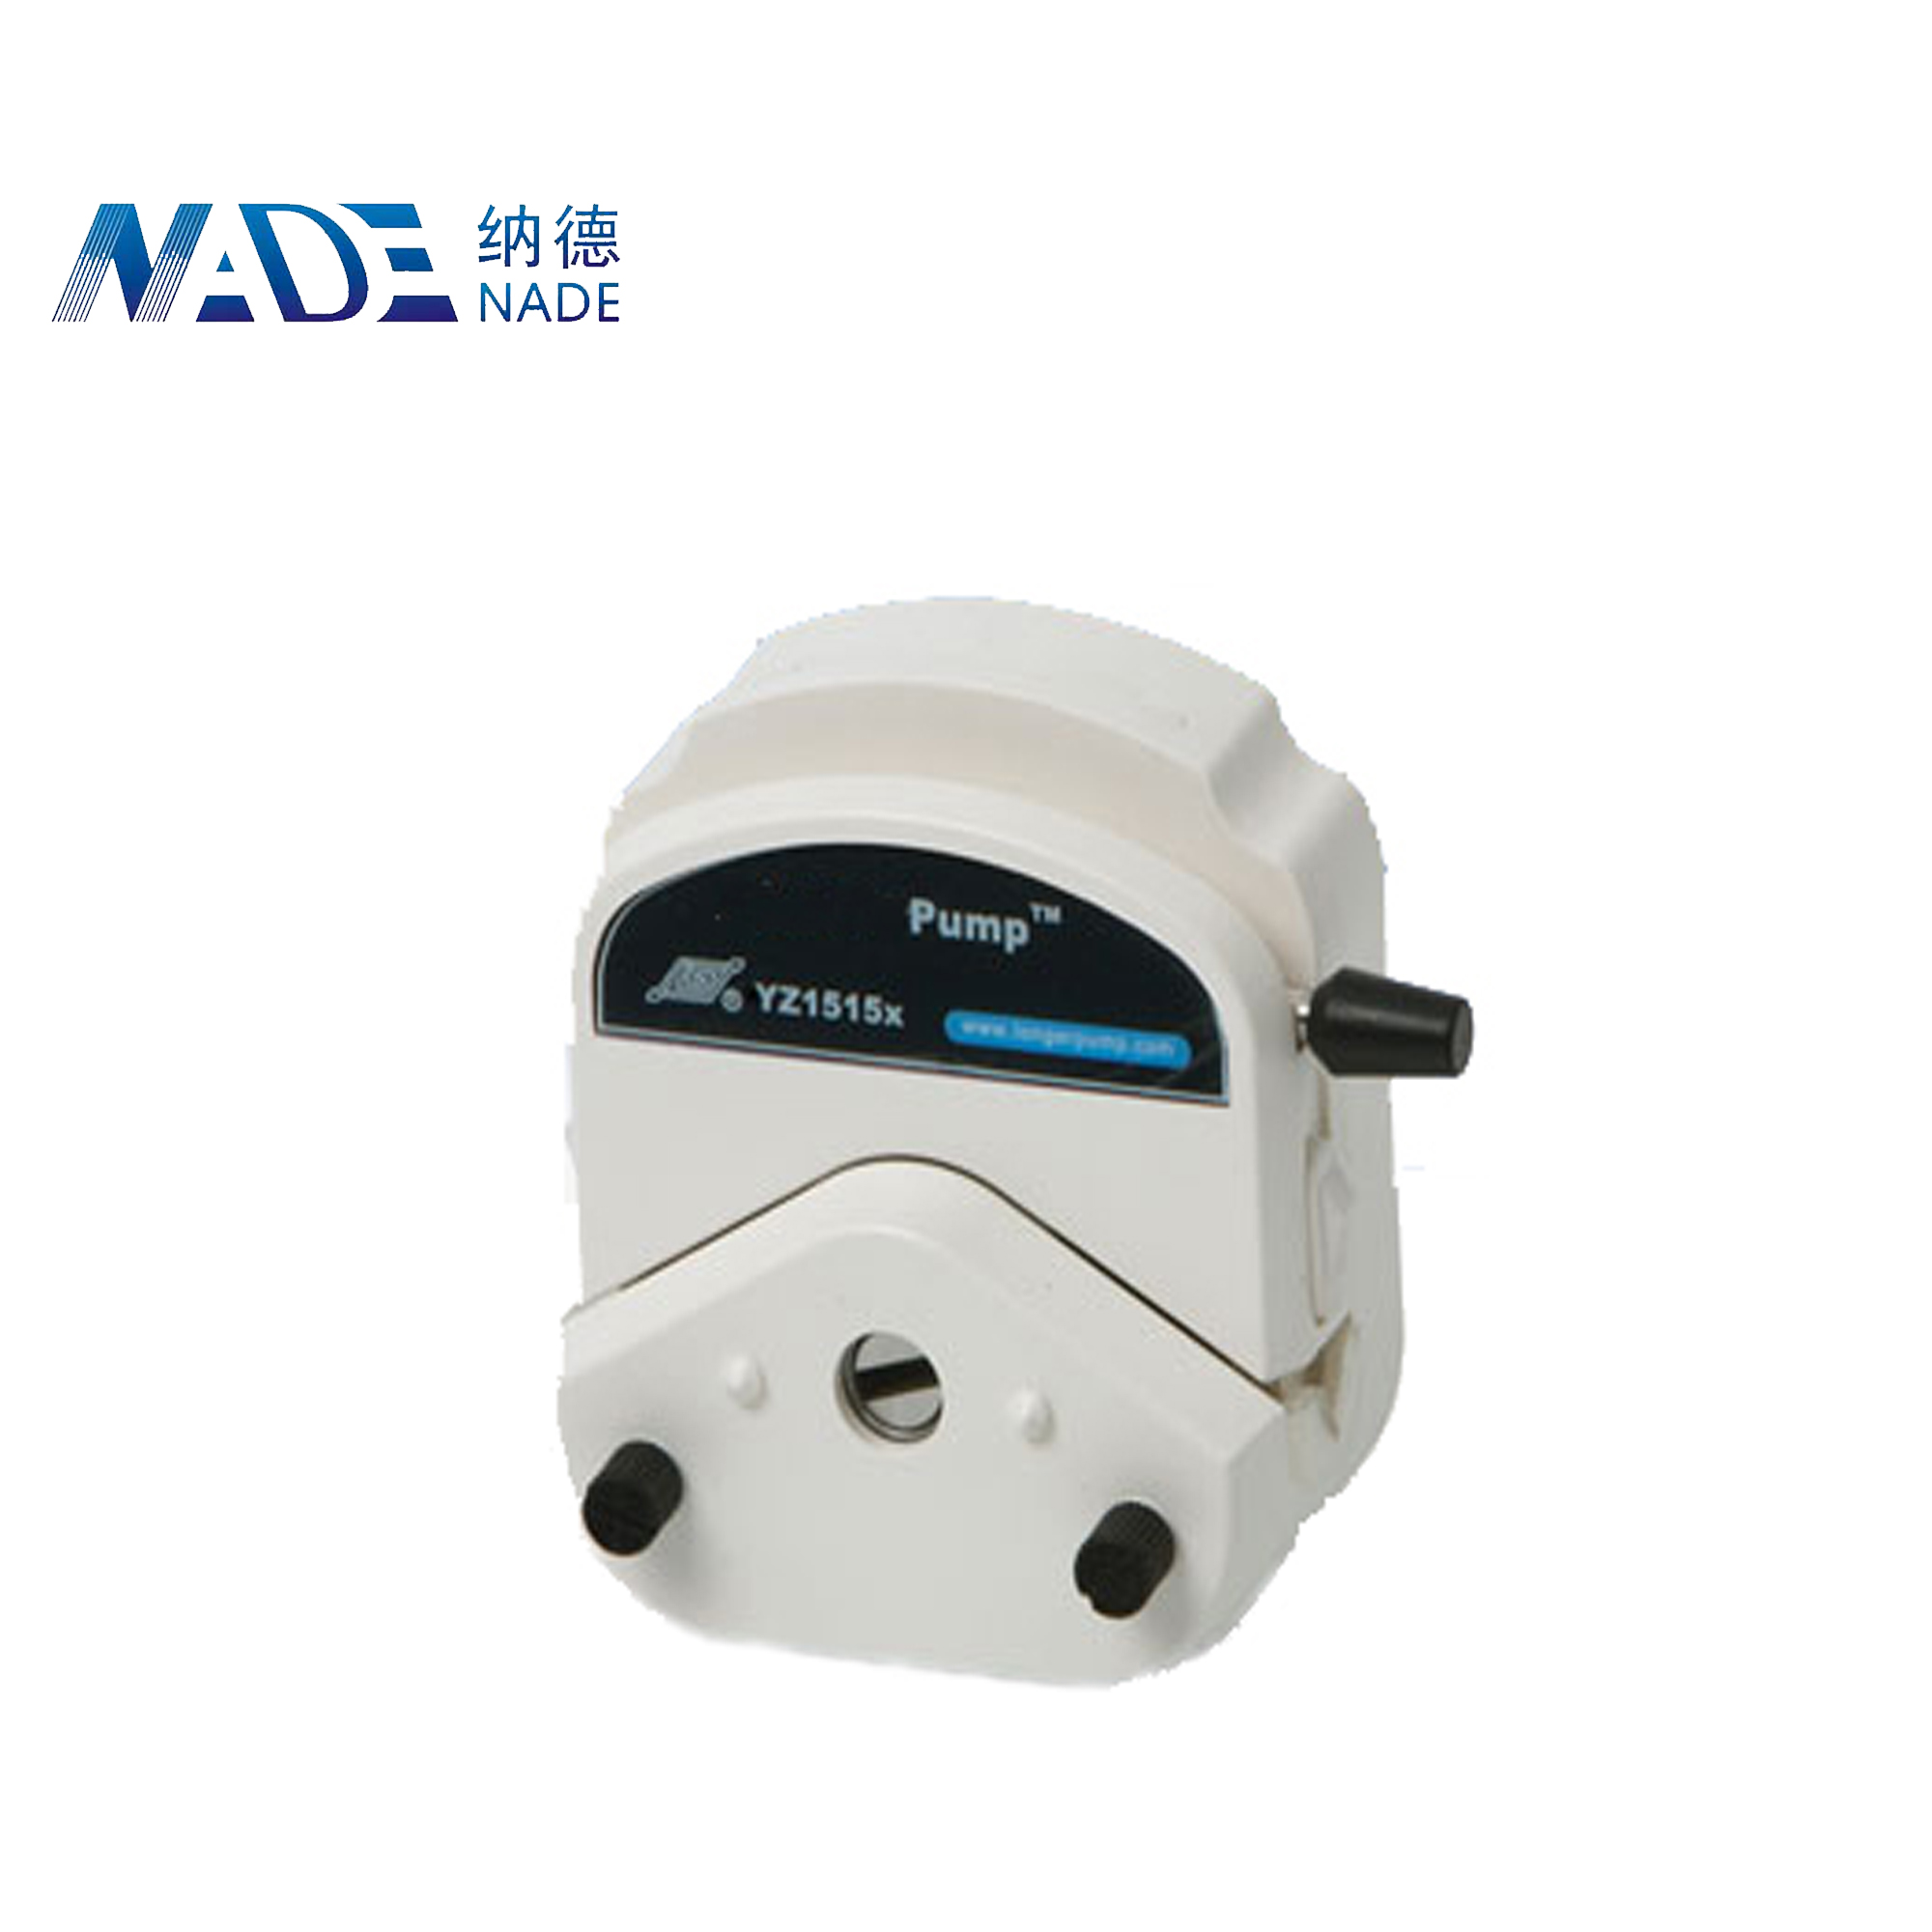 Nade Peristaltic pump Head YZ1515X 2200ml/min